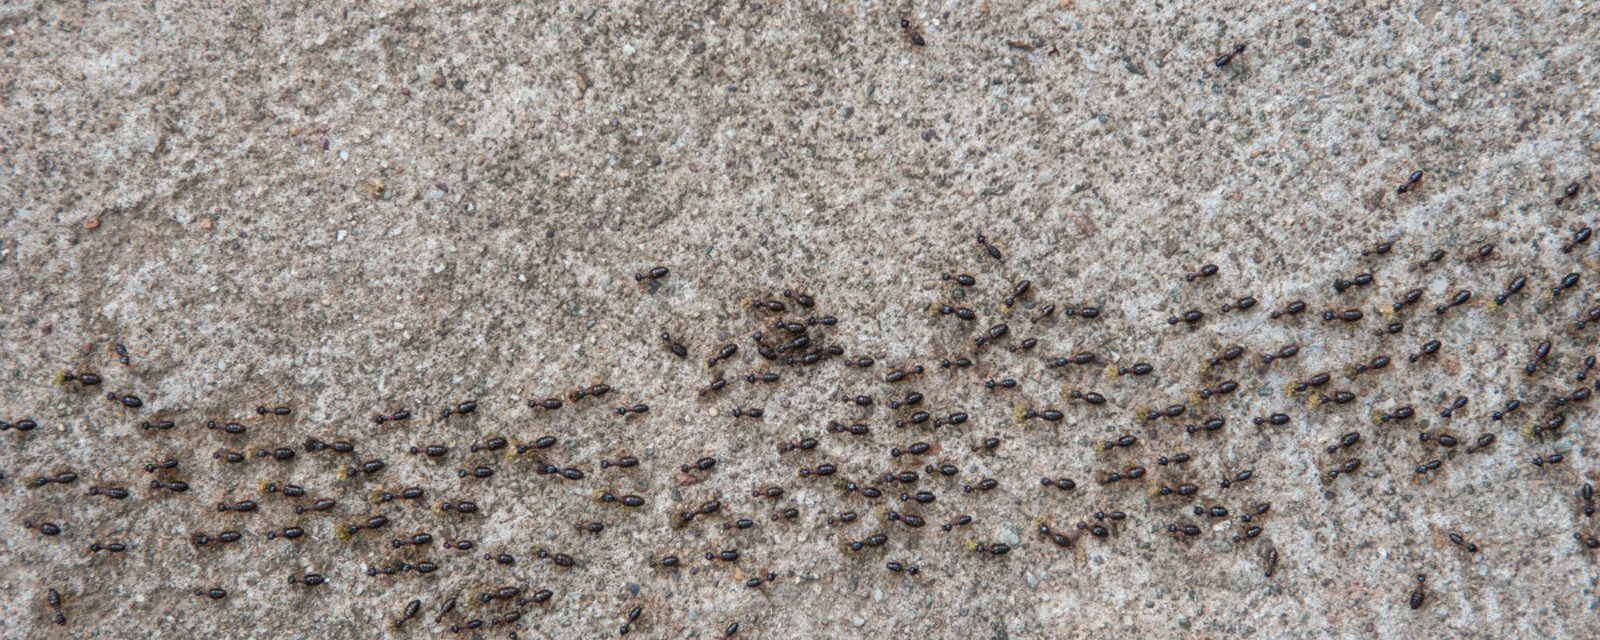 Éloignez les fourmis de la maison avec ce déchet domestique qui repousse les insectes!